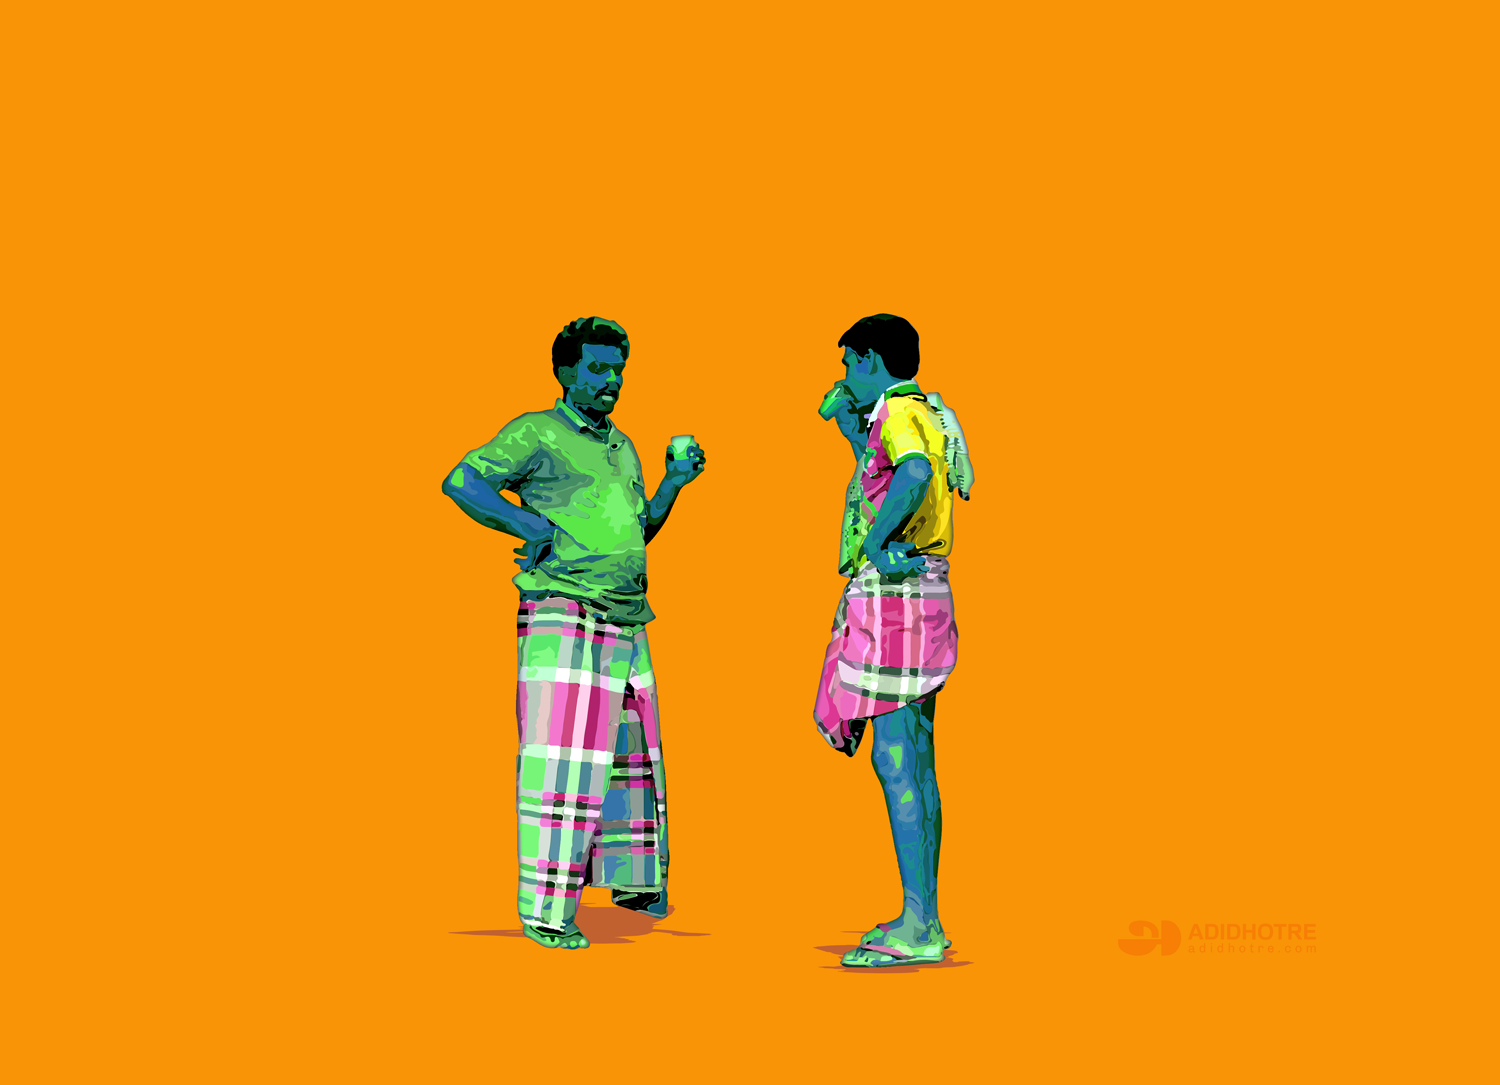 Pseudo Chennai #02 by Aditya Krishna on Dribbble